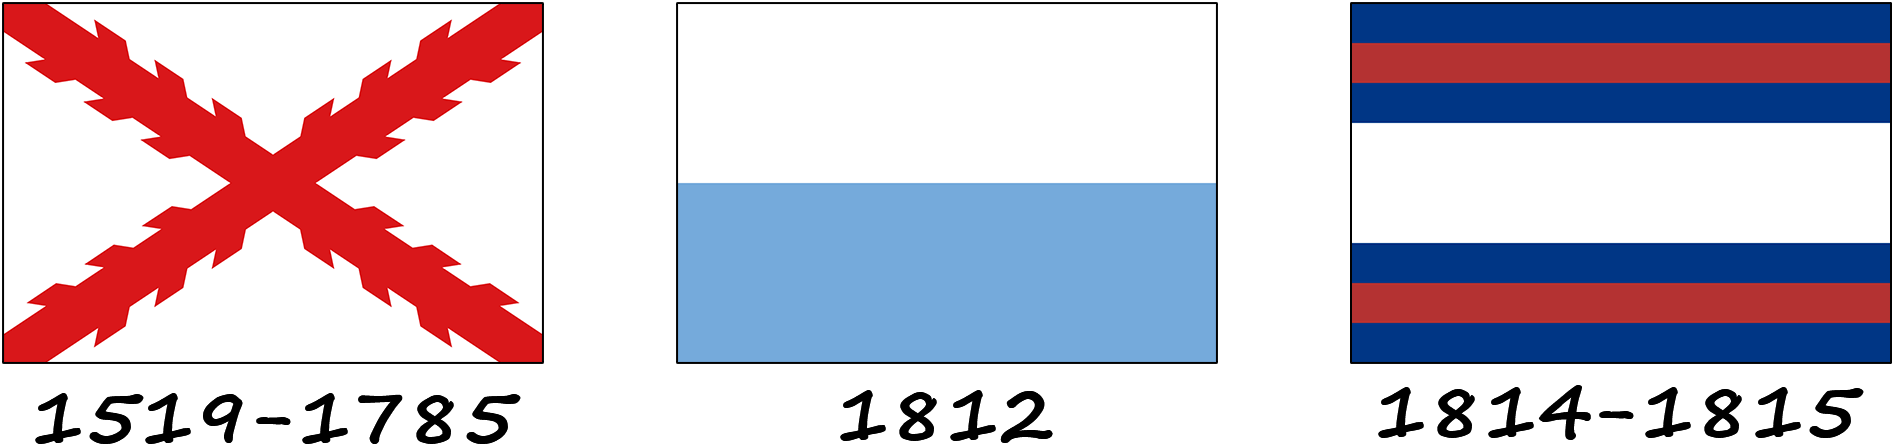 Історія прапору Уругваю